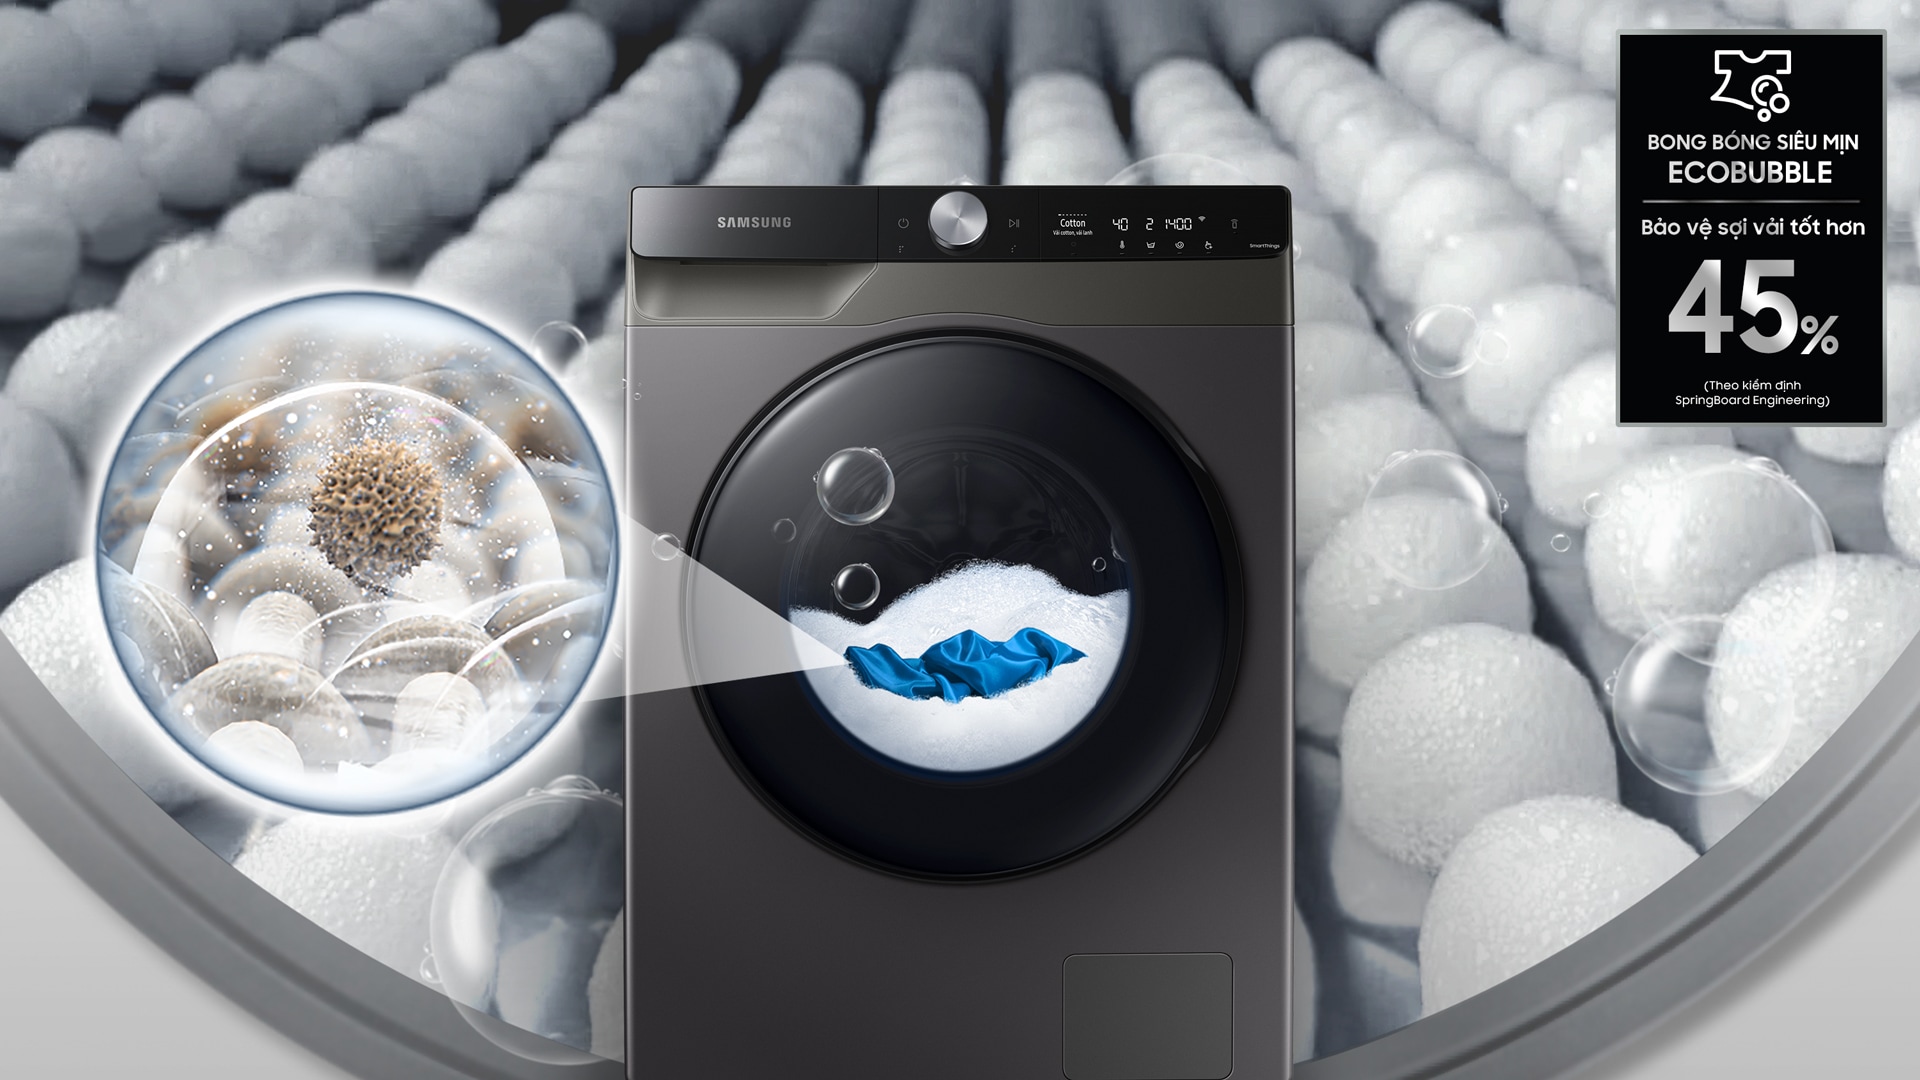 Chế độ Eco Bubble của Máy Giặt Thông Minh Samsung AI 9kg giúp tạo bong bóng siêu mịn giặt sạch sâu bảo vệ sợi vải